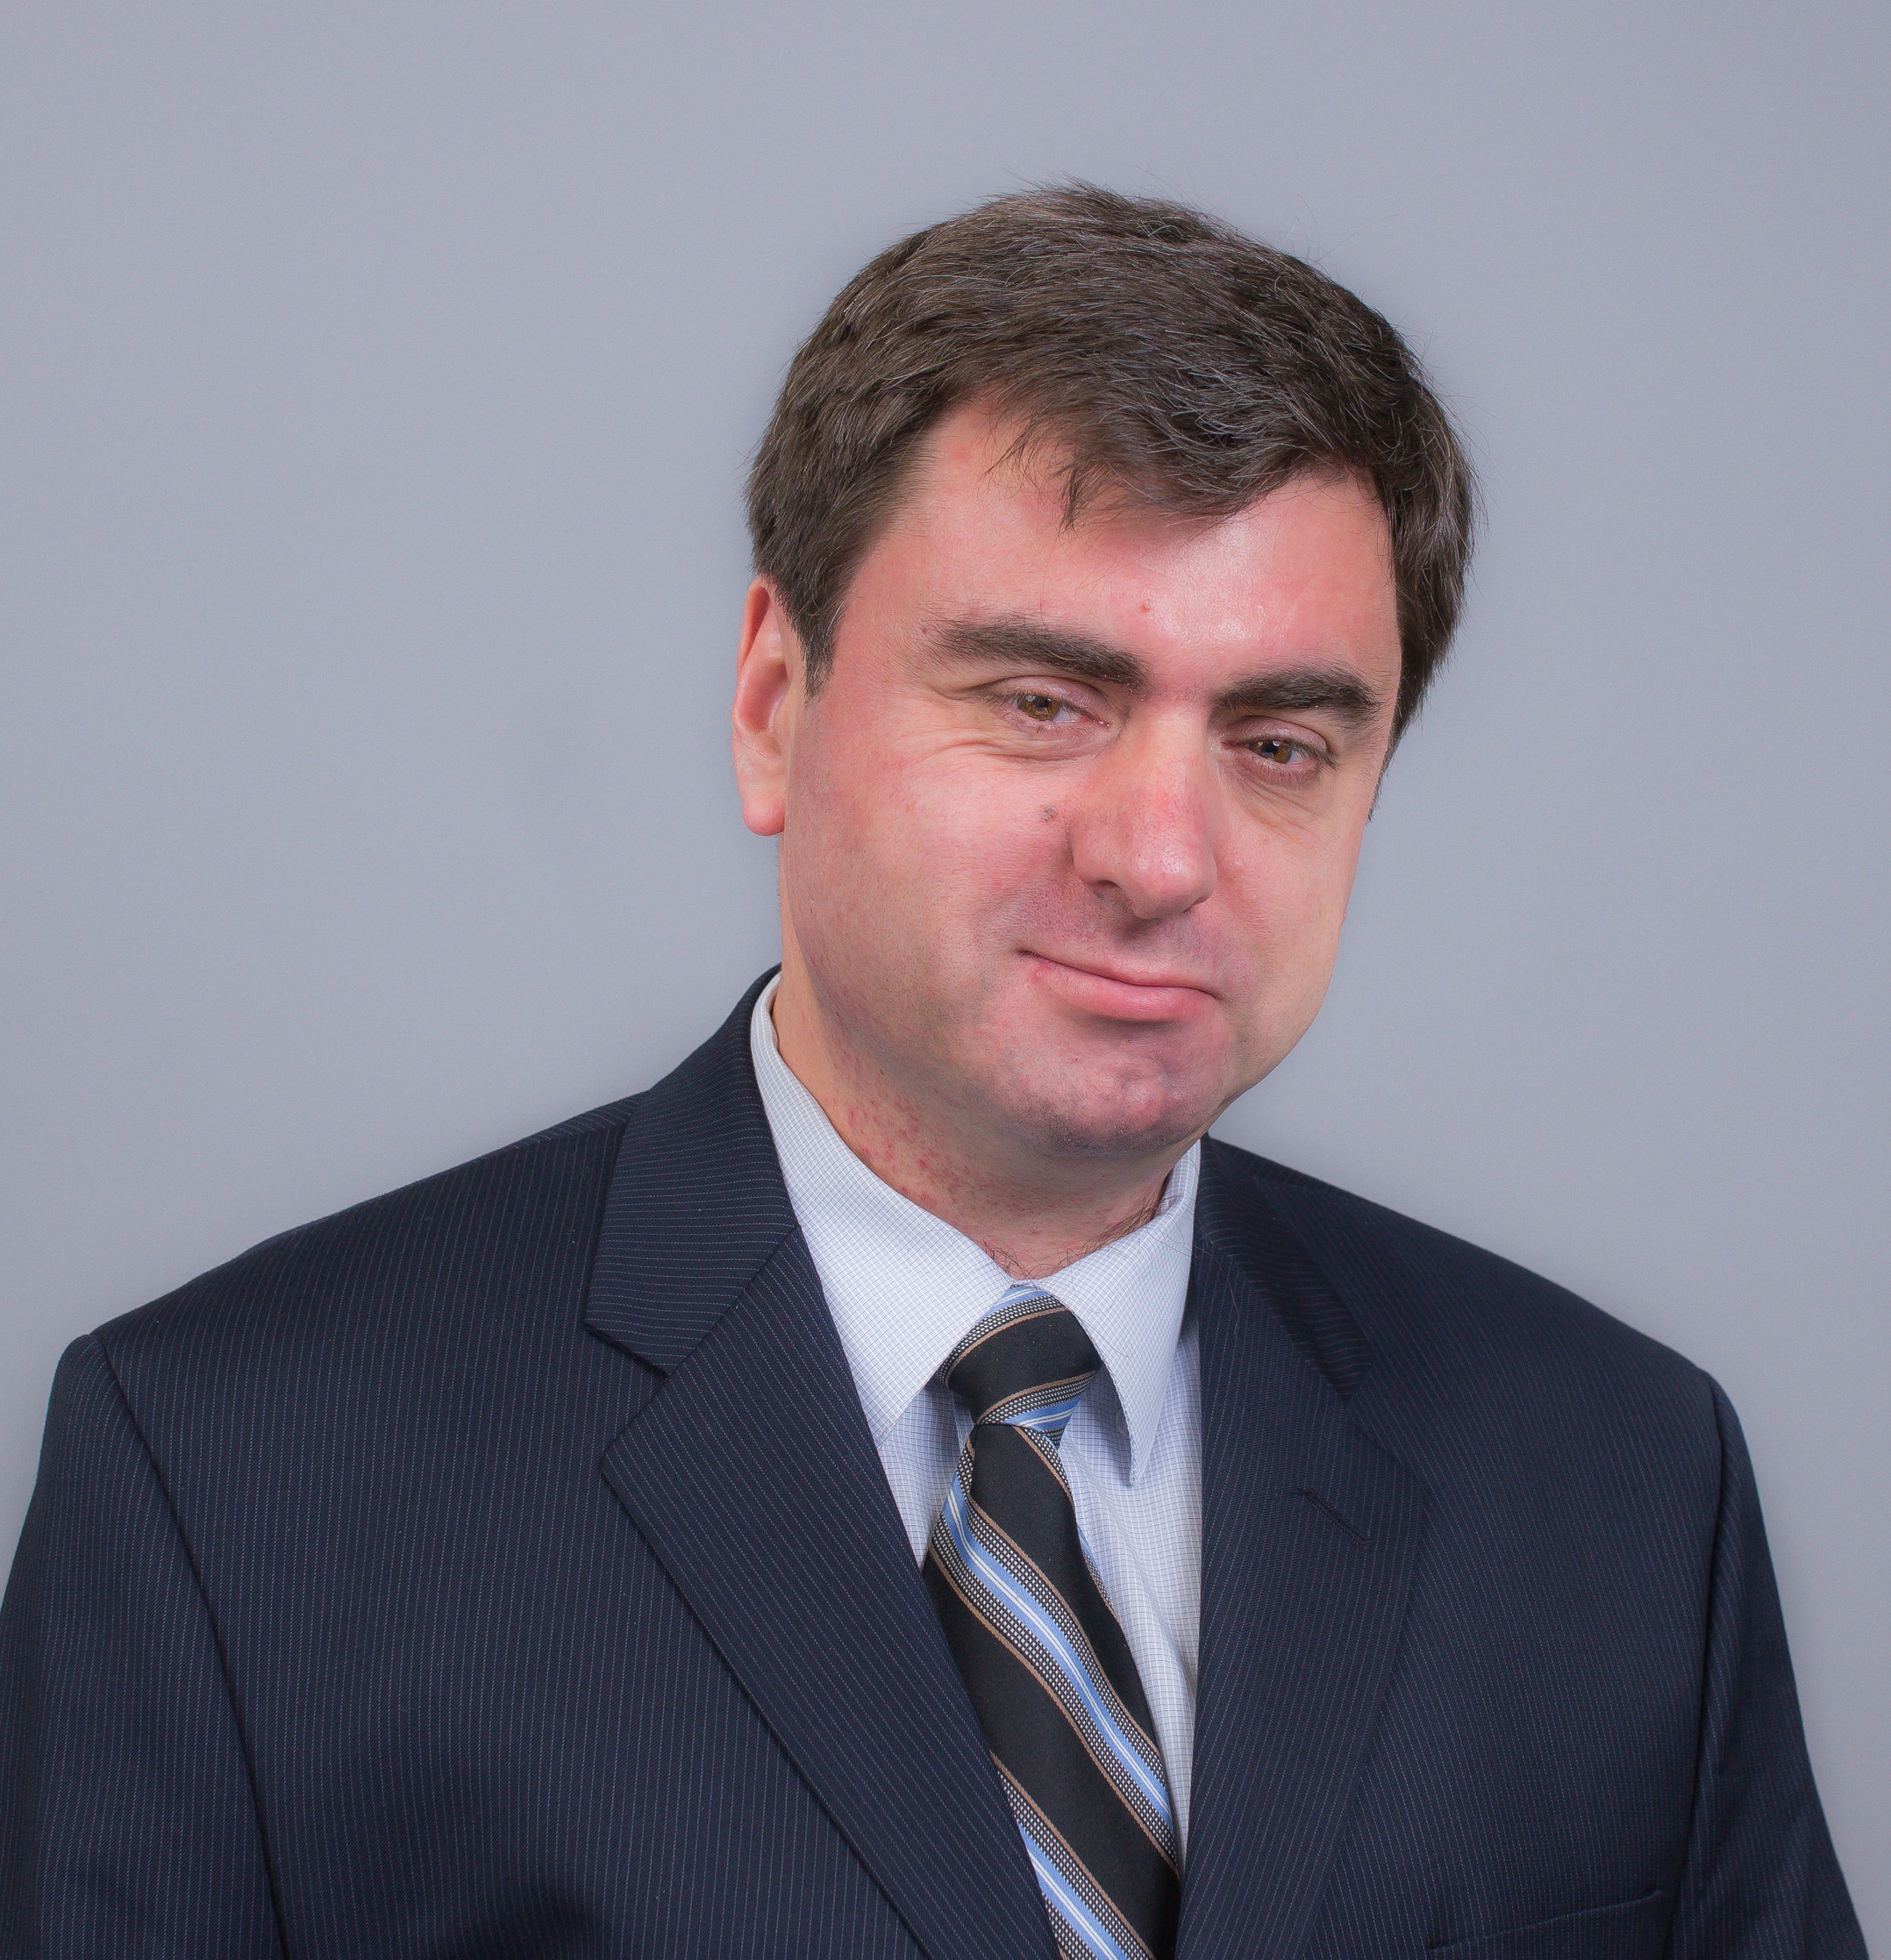 Paul Dumitrescu, P.E.&lt;strong&gt;Associate Technical Director - Electrical Engineering&lt;/strong&gt;